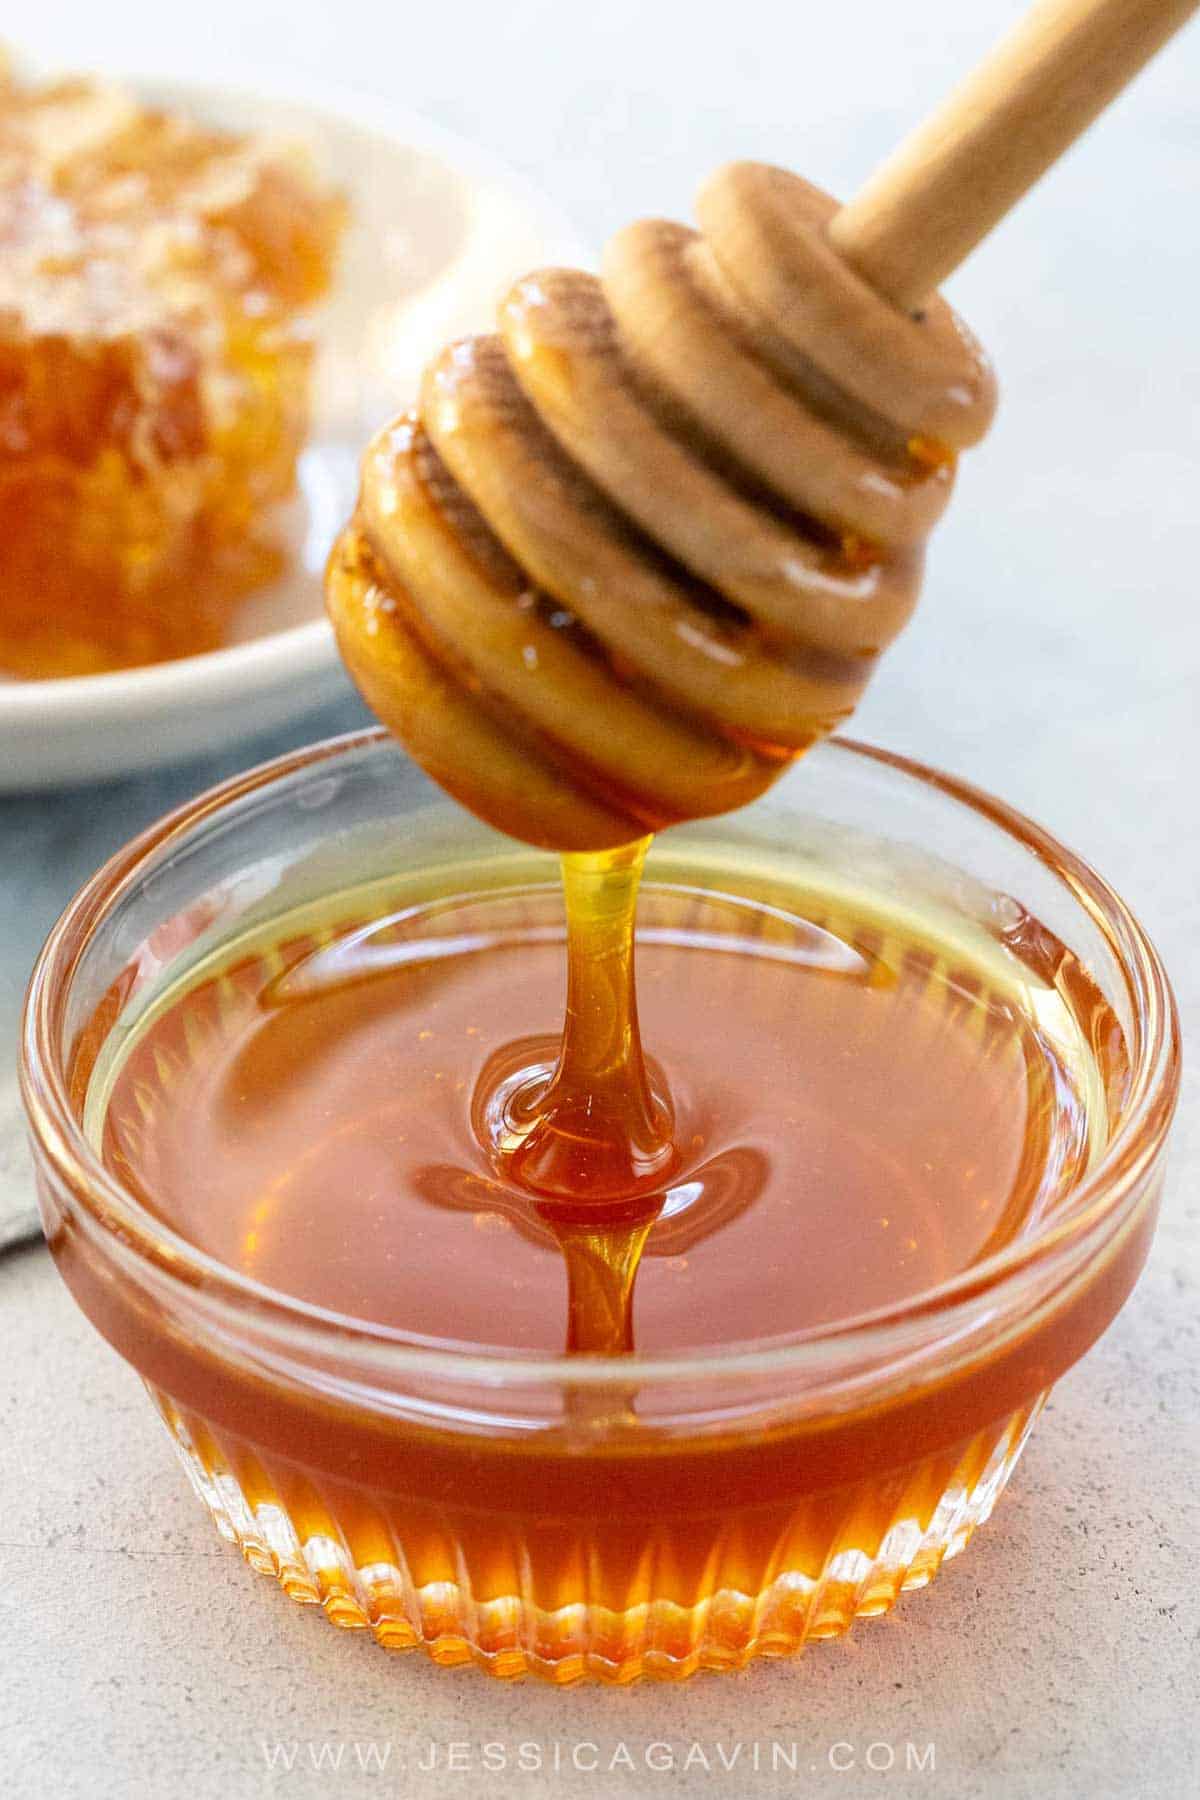 Những sai lầm khi bảo quản mật ong mà bạn nên tránh để mật ong luôn ngon và bổ dưỡng - Ảnh 2